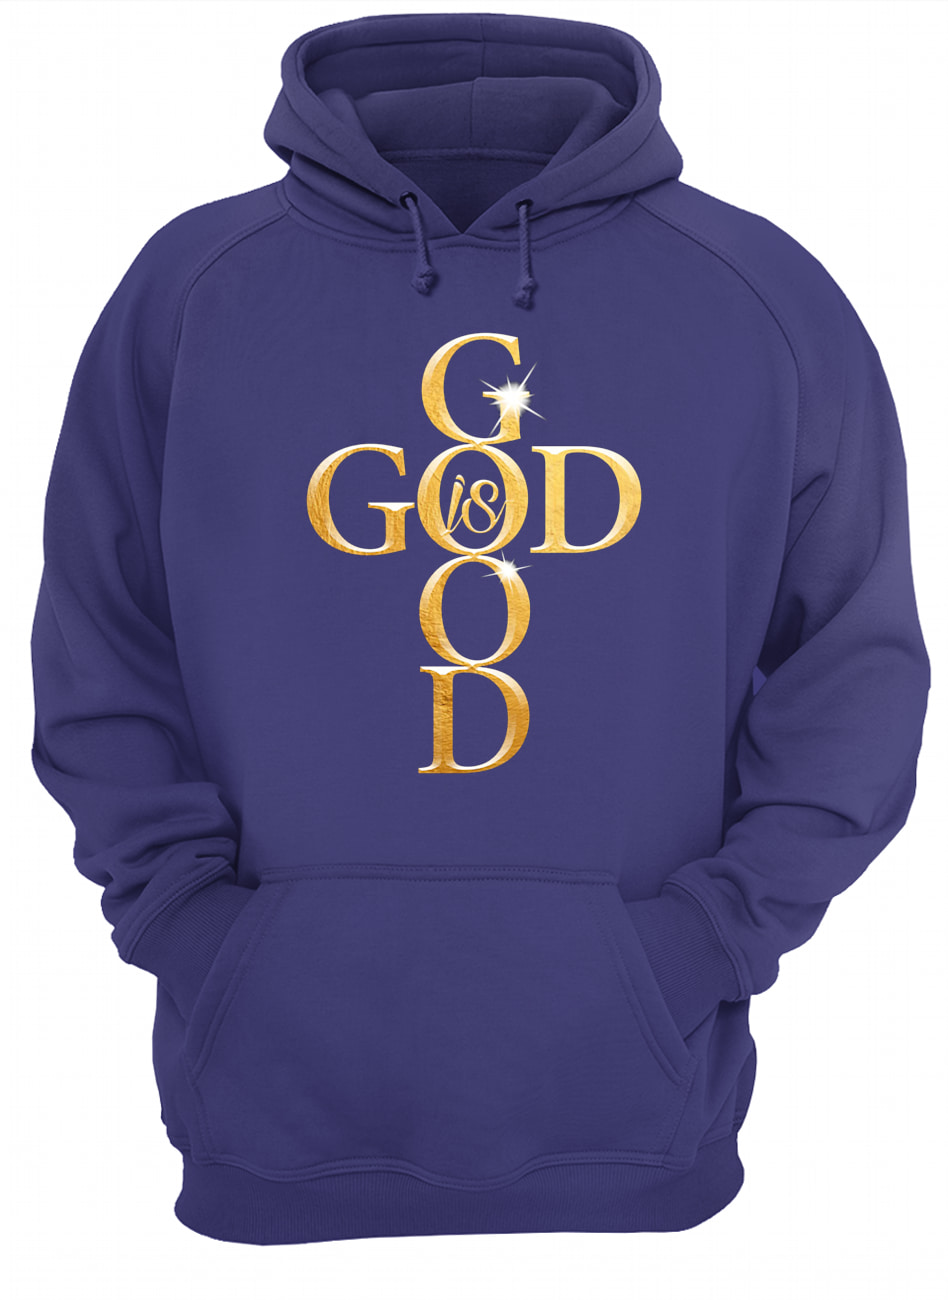 God is good hoodie